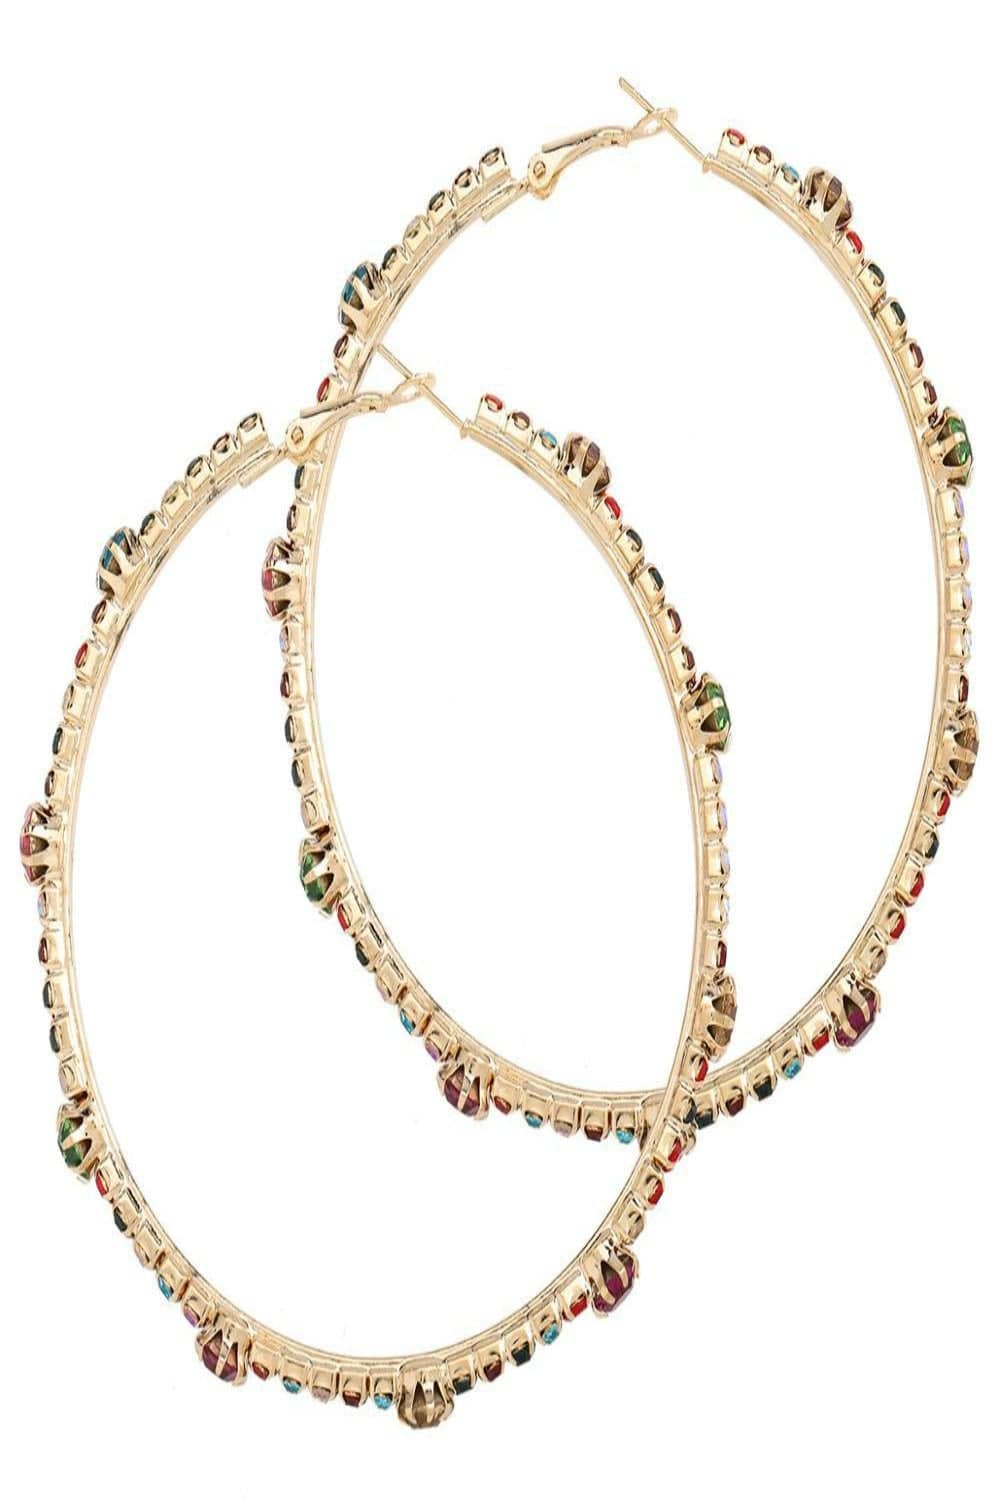 Shiny Rhinestone Gems Statement Huge Hoop Earrings - TGC Boutique - Hoop Earrings